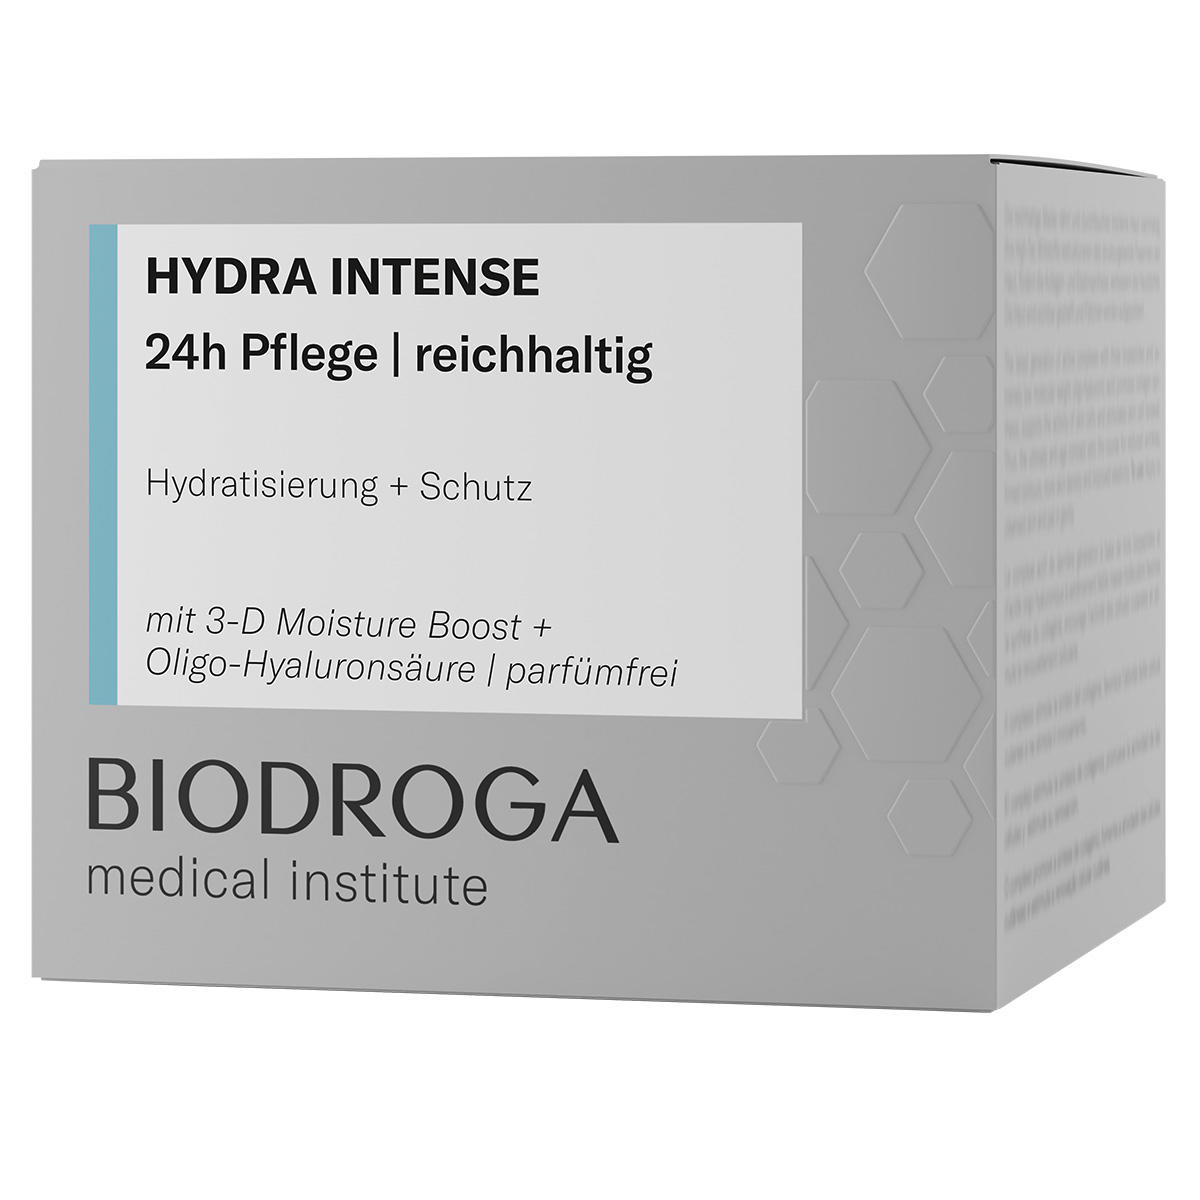 BIODROGA Medical Institute HYDRA INTENSE Assistenza 24 ore su 24 ricca 50 ml - 2